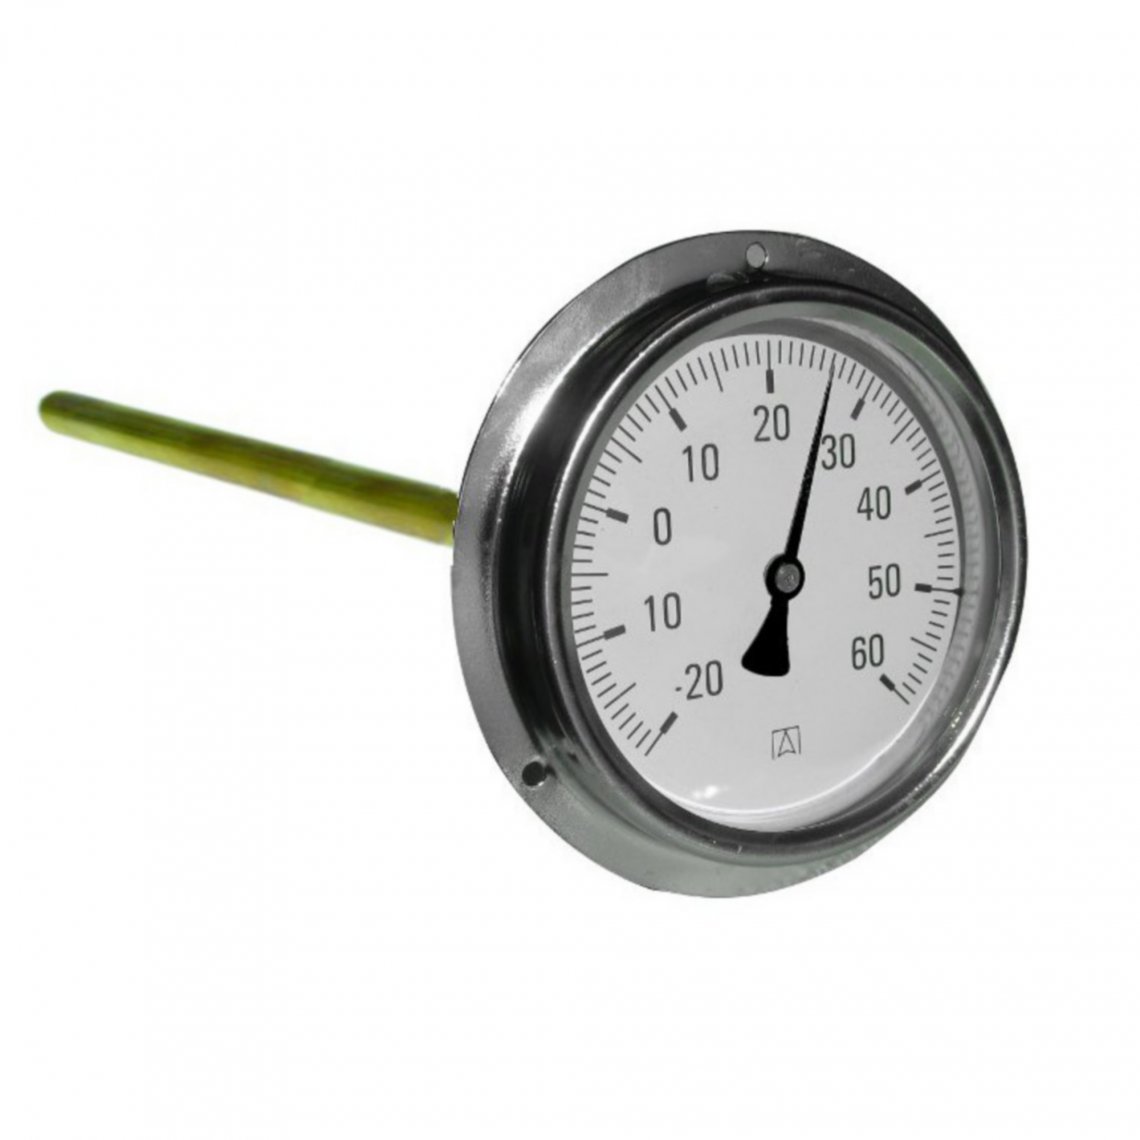 Thermomètre pour gaine HB pour mesure de température